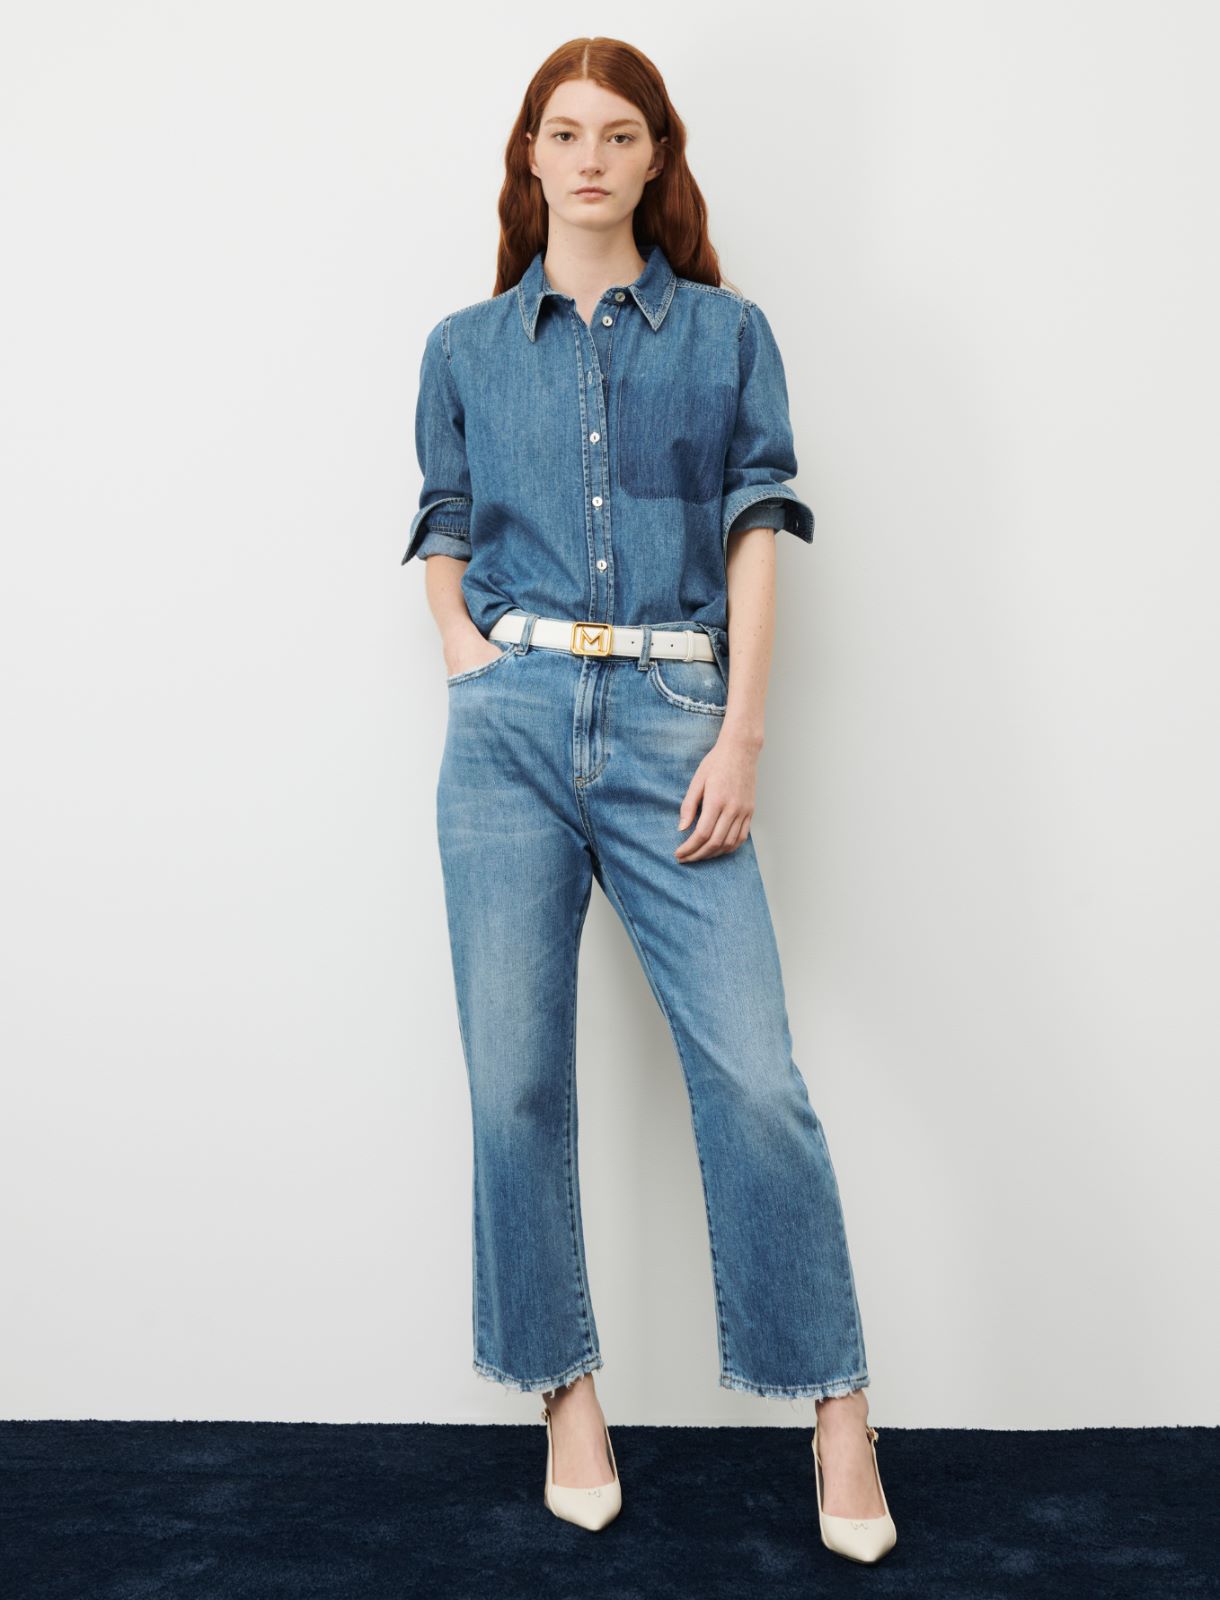 Denim shirt - Blue jeans - Marina Rinaldi